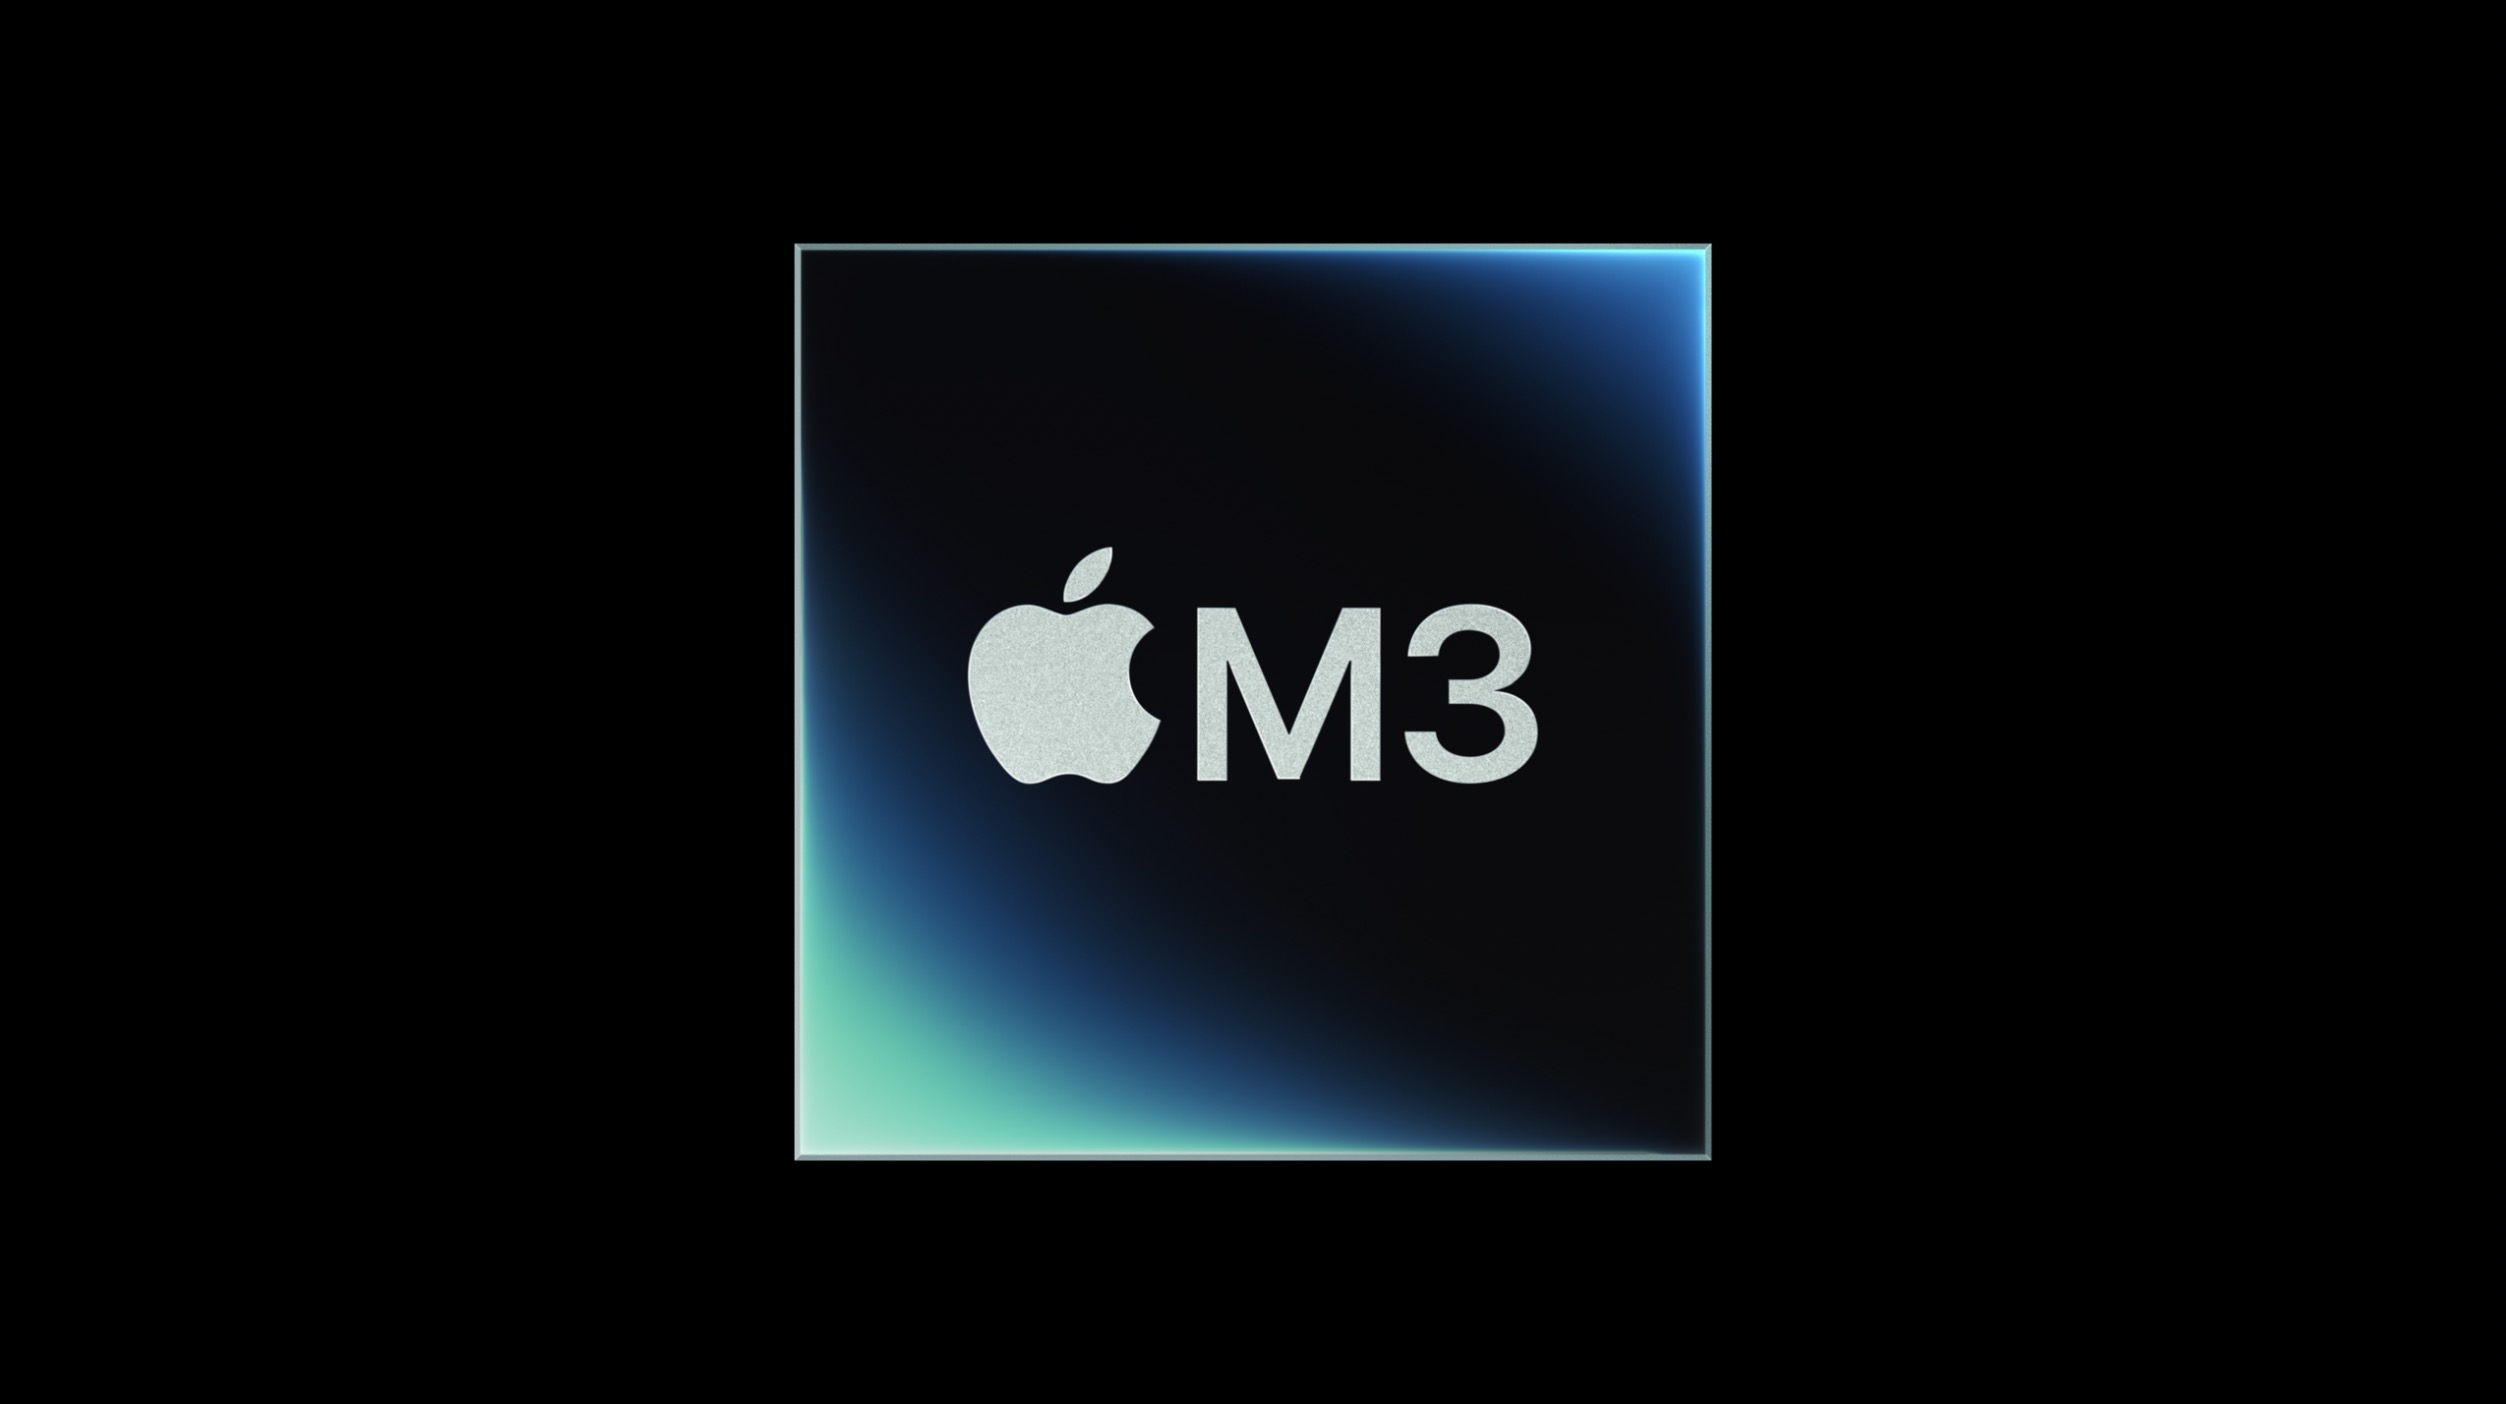 iMac M3 contre processeur, GPU et mémoire Intel iMac